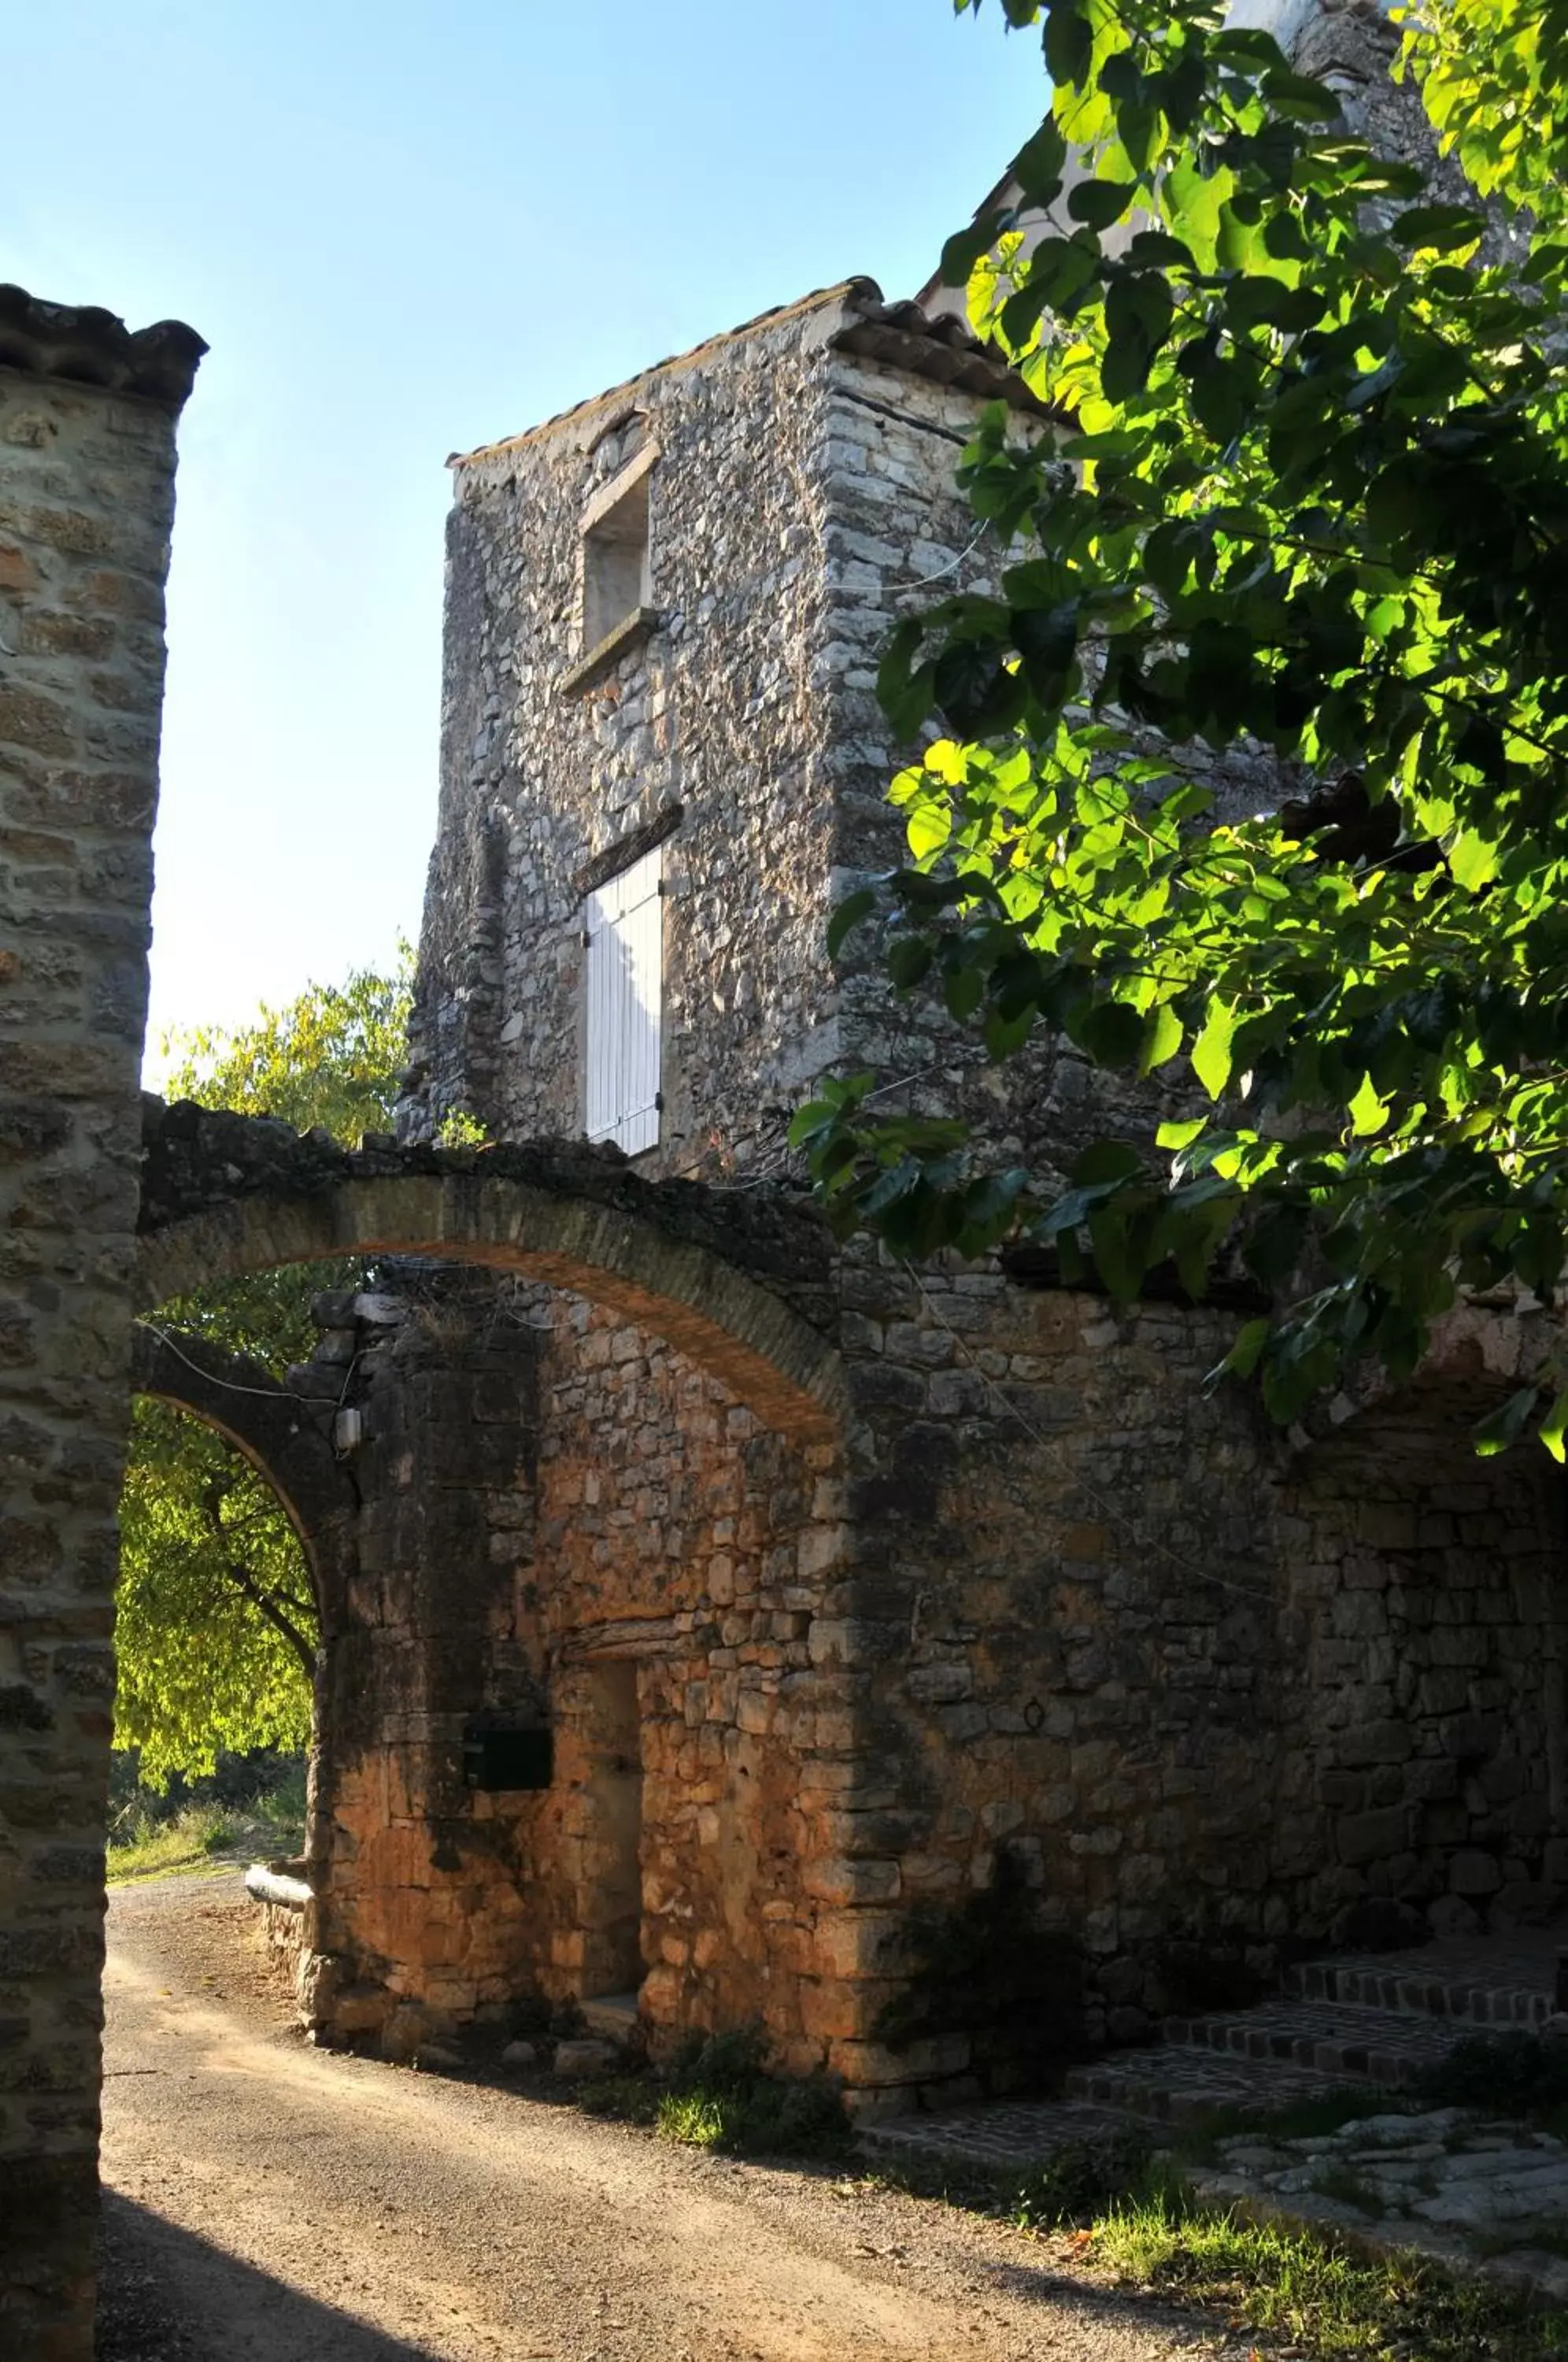 Property Building in Chateau de Sainte Croix